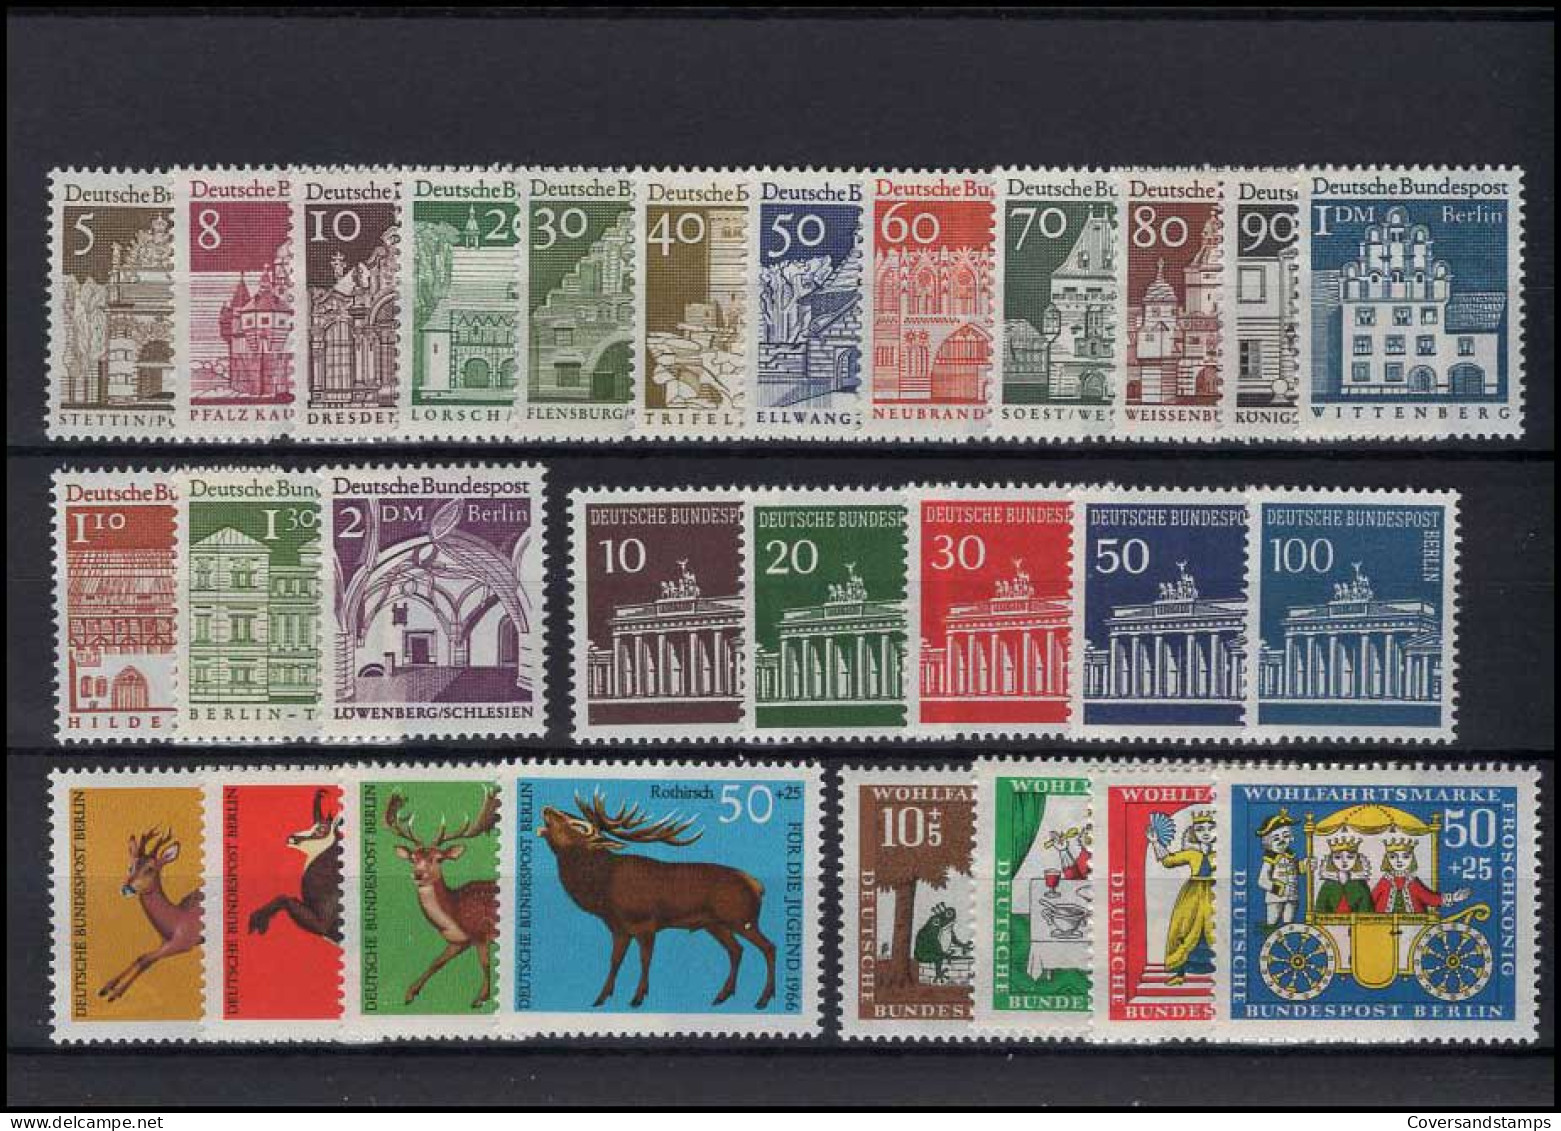   Bundespost Berlin - Volledig Jaar / Jahrgang 1966  MNH - Unused Stamps